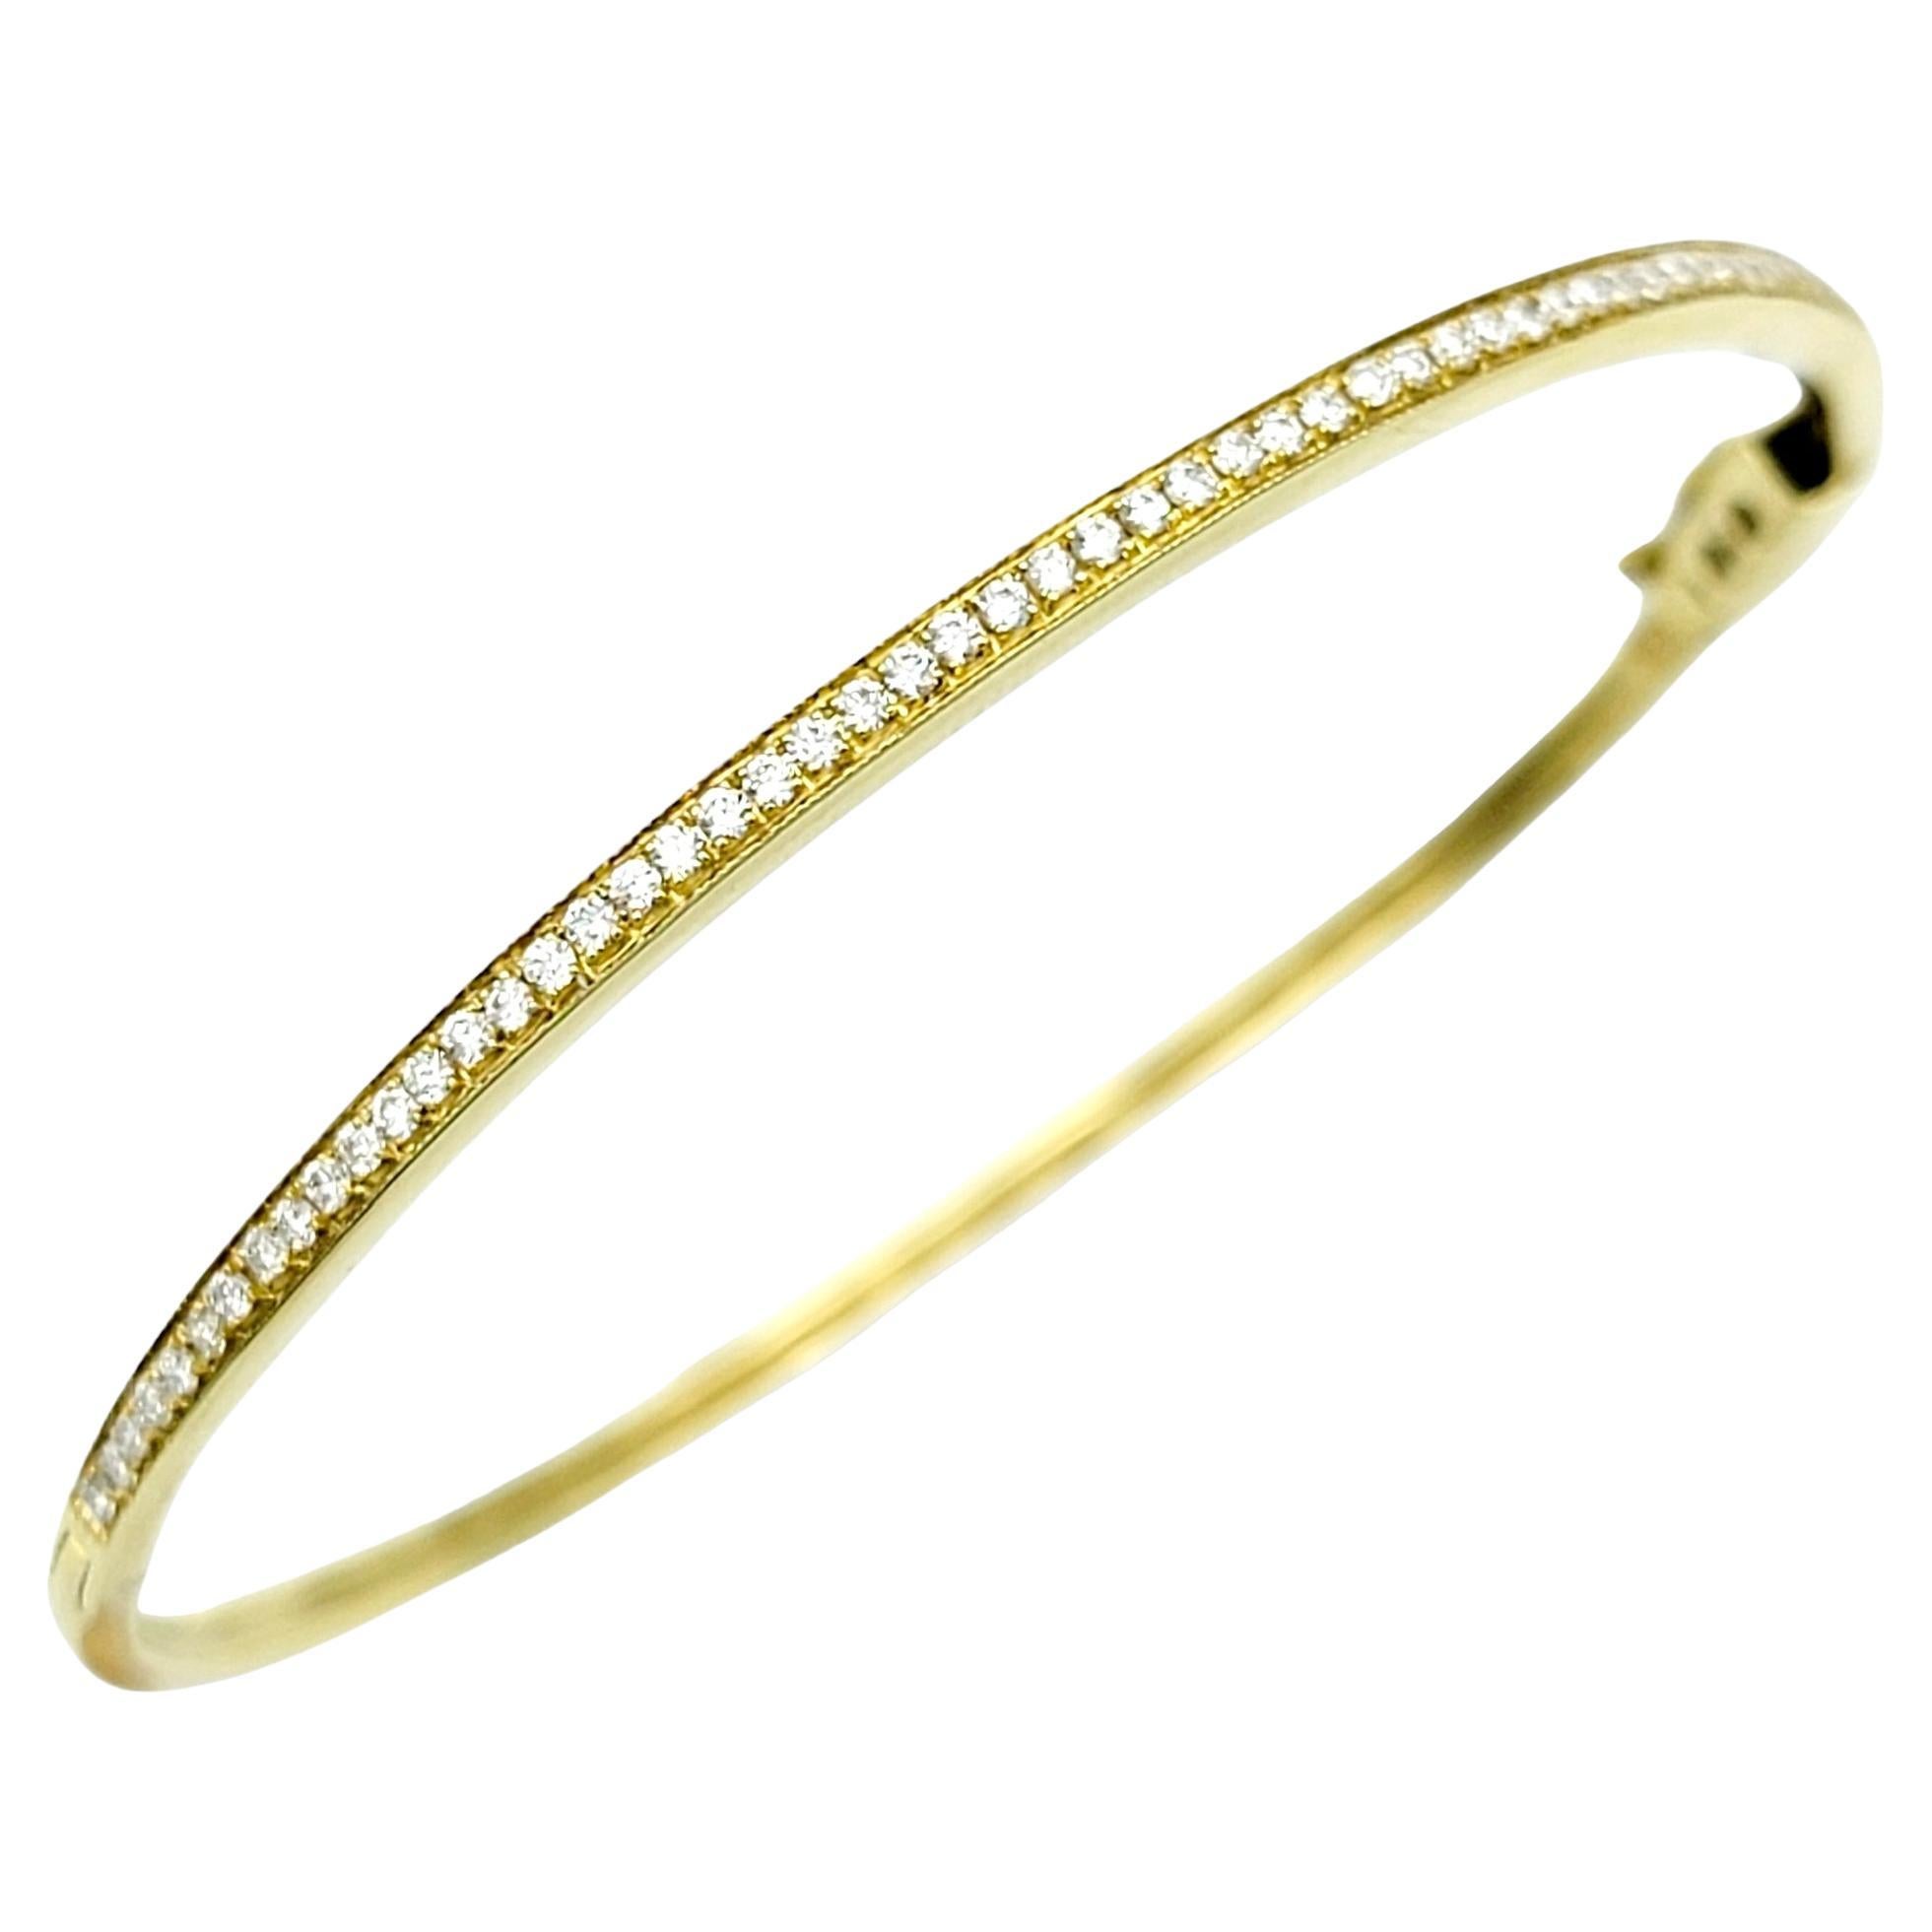 Round Pave Diamond Narrow Hinged Stacking Bangle Bracelet 18 Karat Yellow Gold